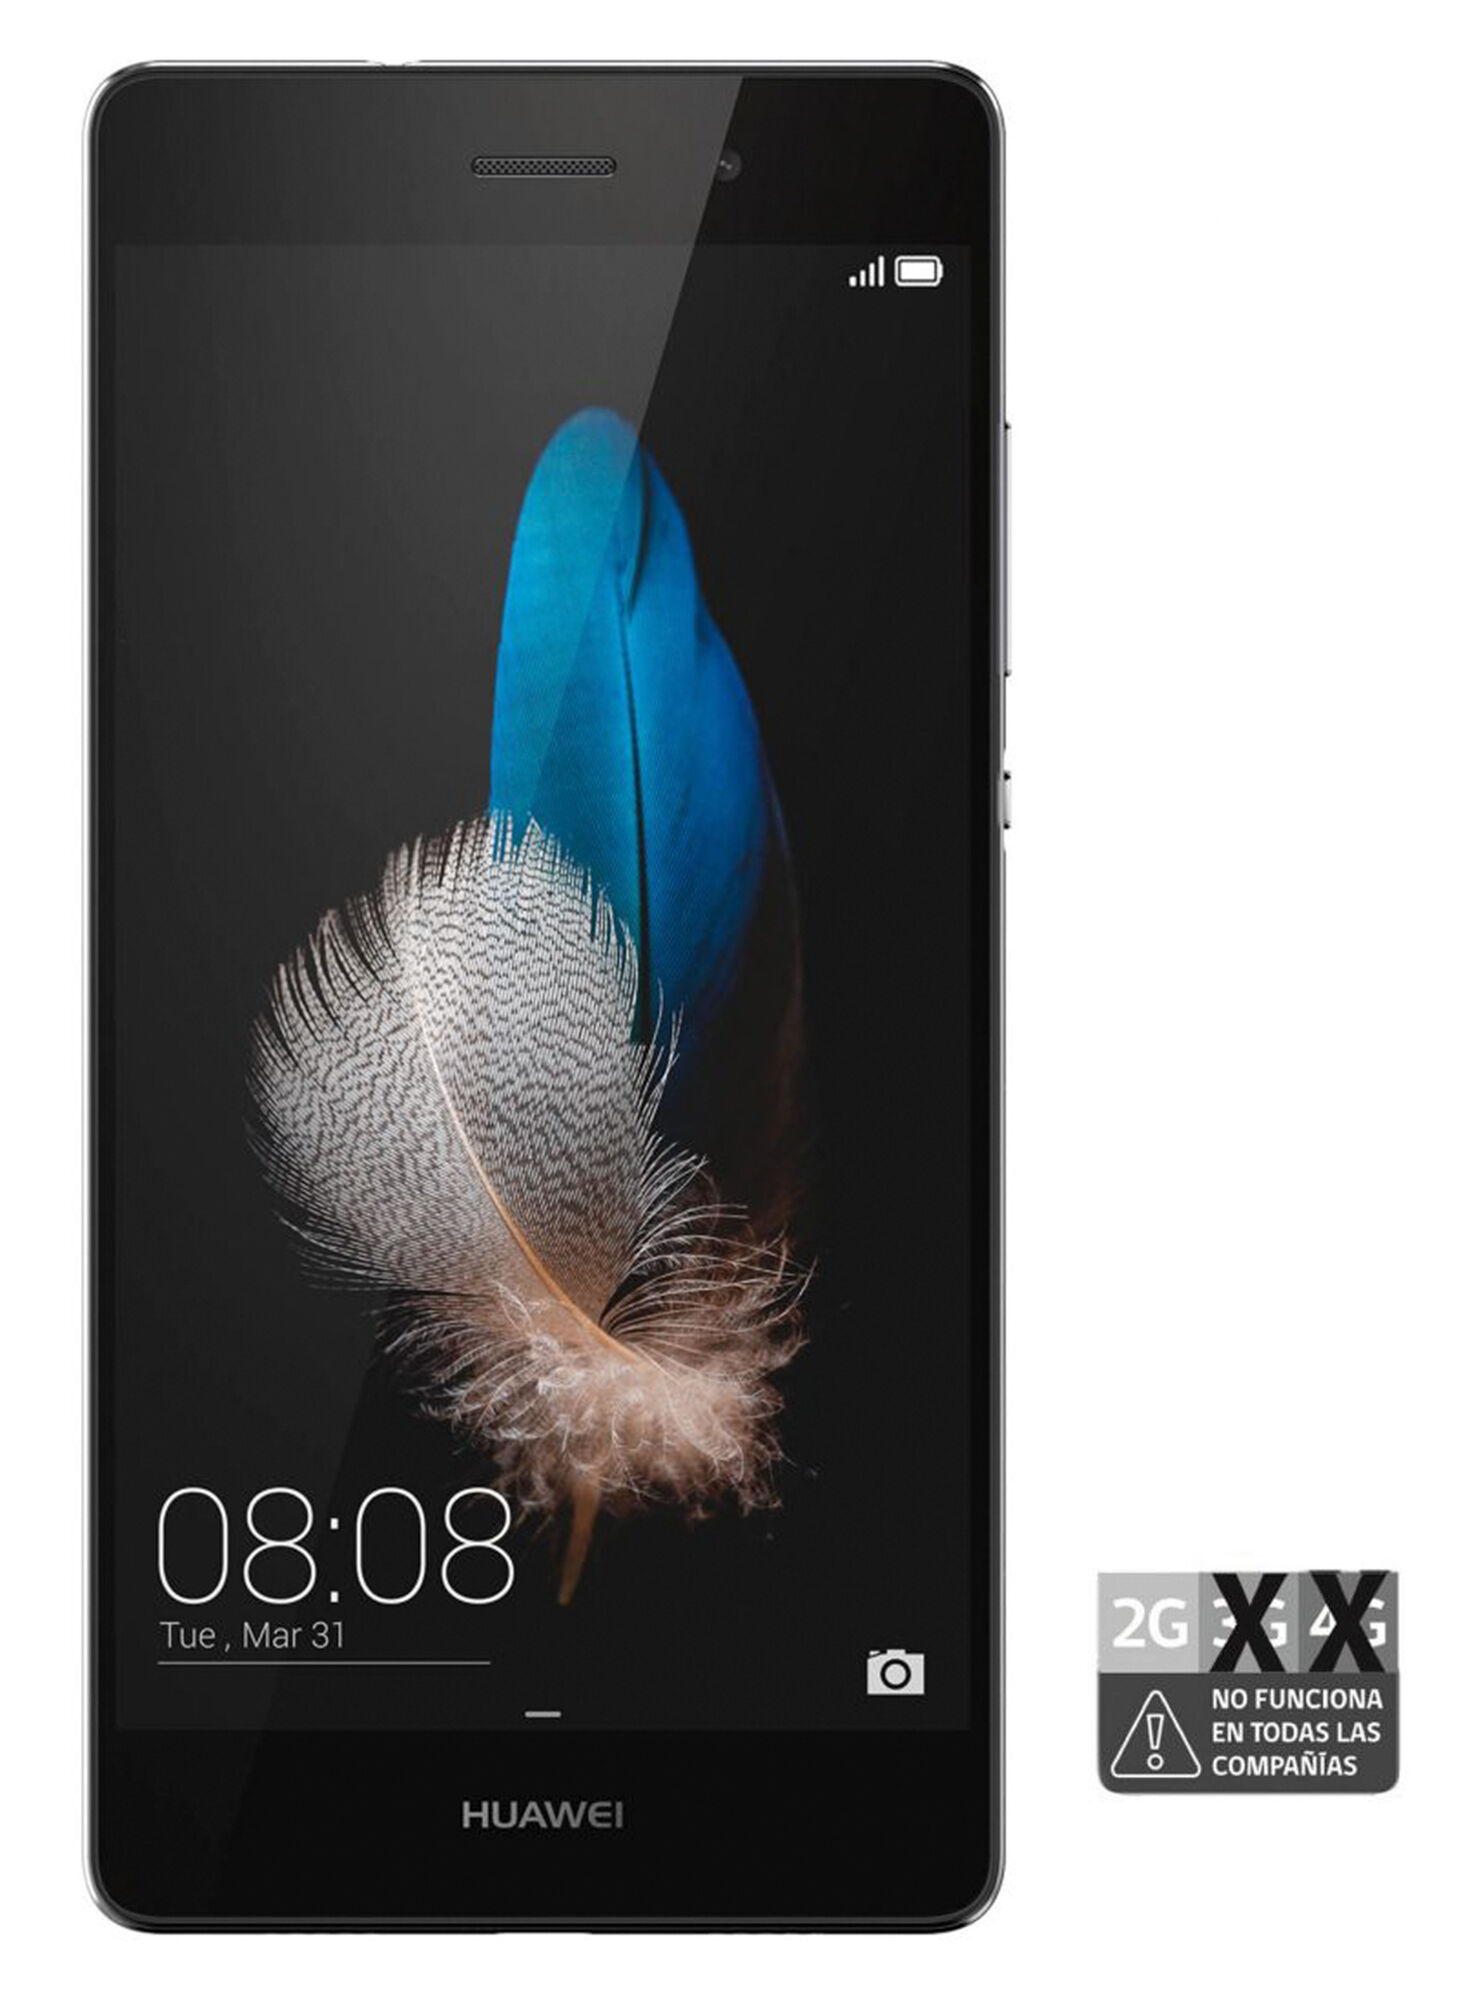 Vervagen lineair voorspelling Smartphone Huawei P8 Lite Negro 5" Entel - Smartphones | Paris.cl